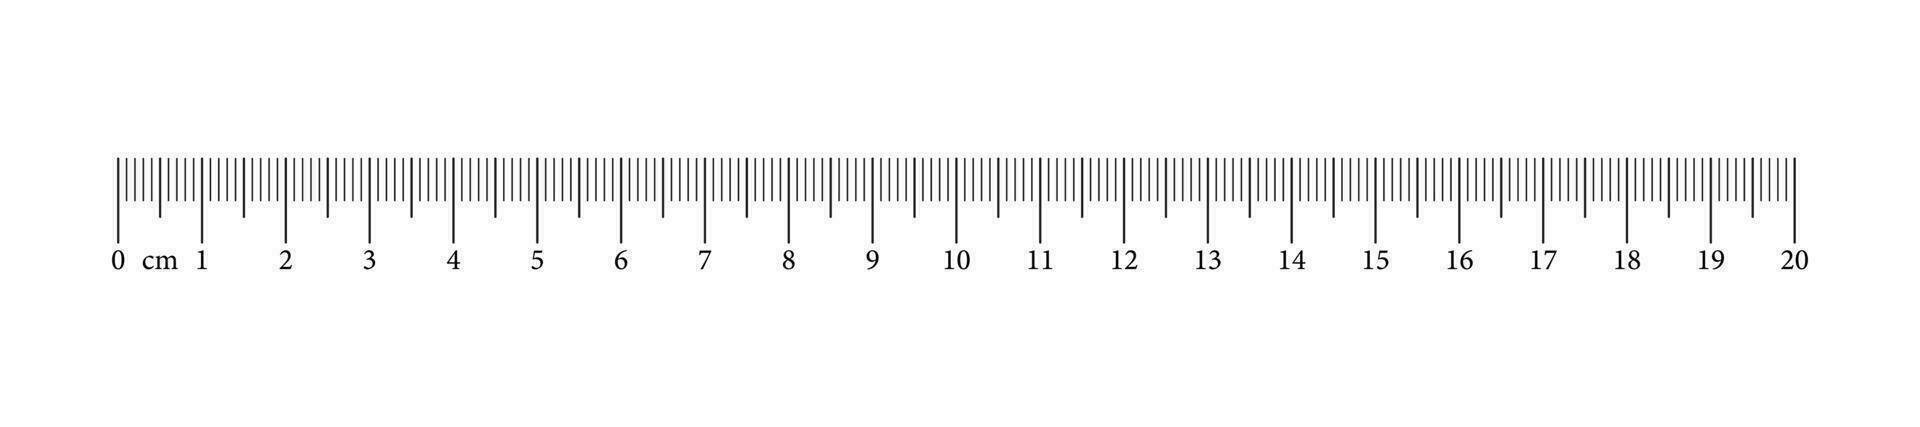 misurazione grafico con 20 centimetri. righello scala con numeri. lunghezza misurazione matematica, distanza, altezza, cucire attrezzo. vettore